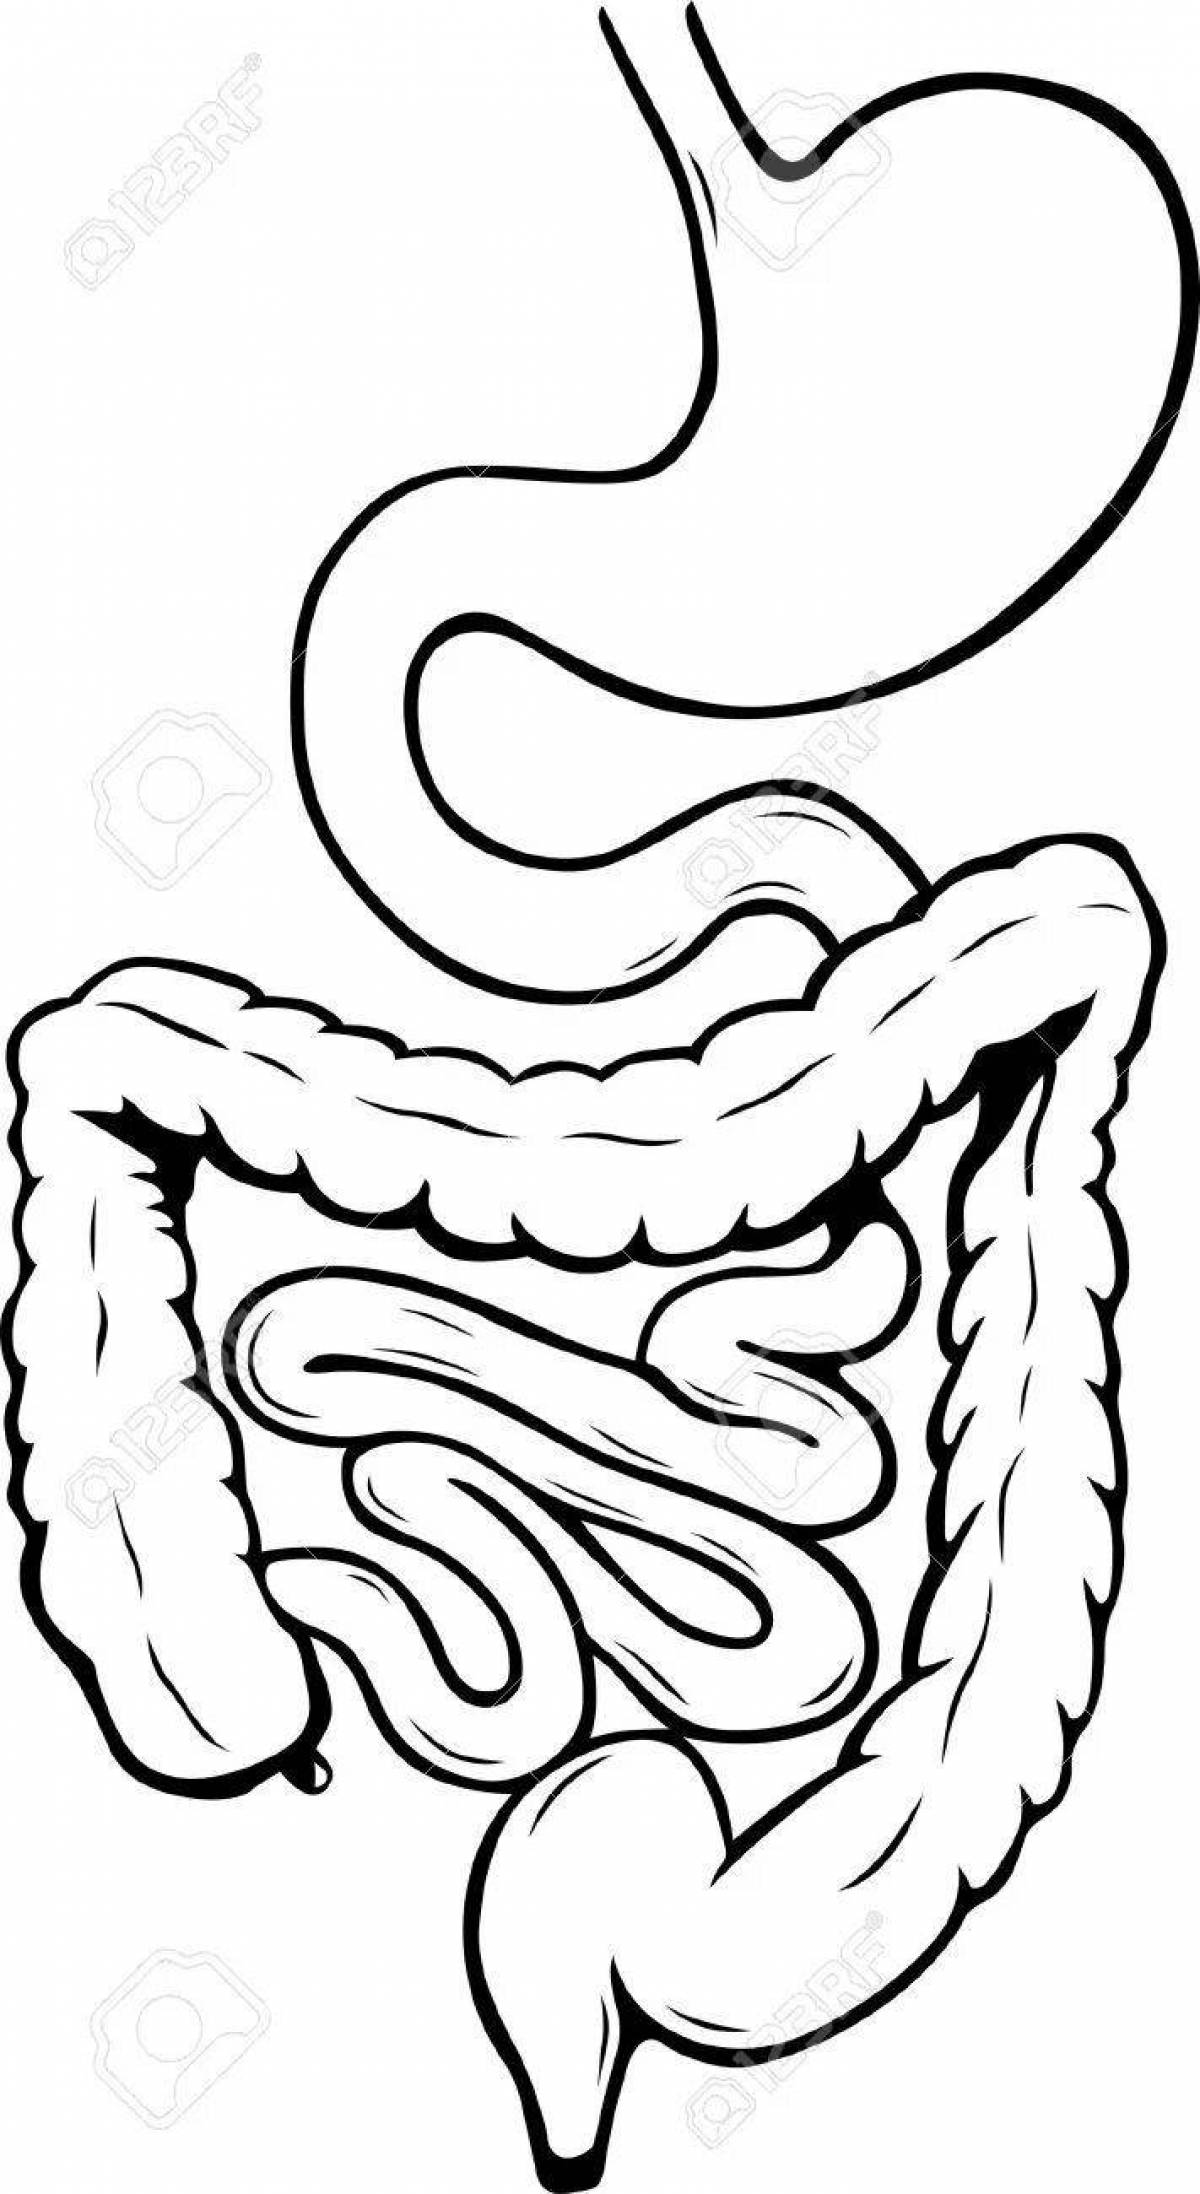 Fun coloring of the human intestine